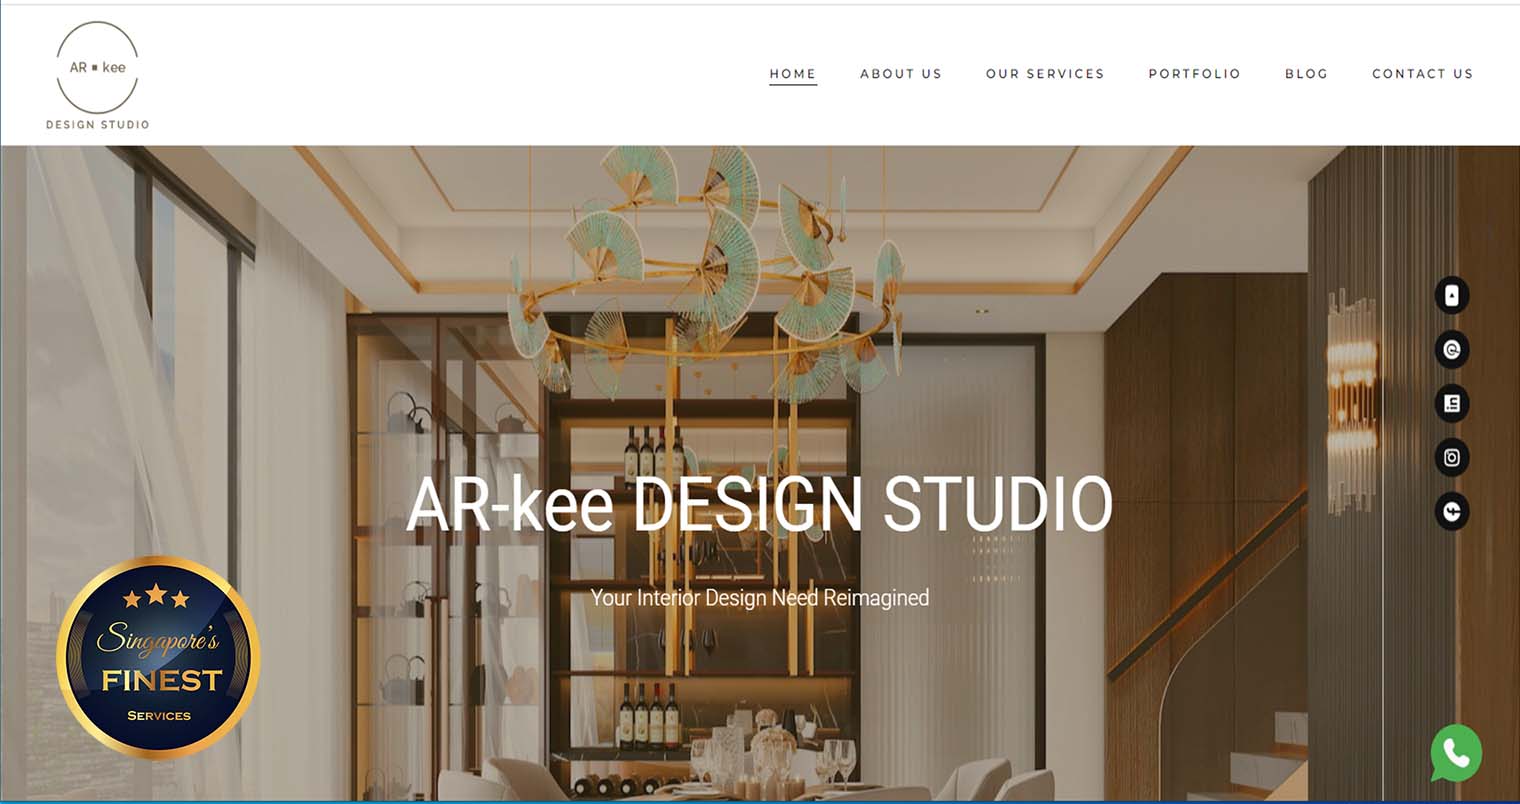 AR-kee Design Studio - Interior Design Singapore